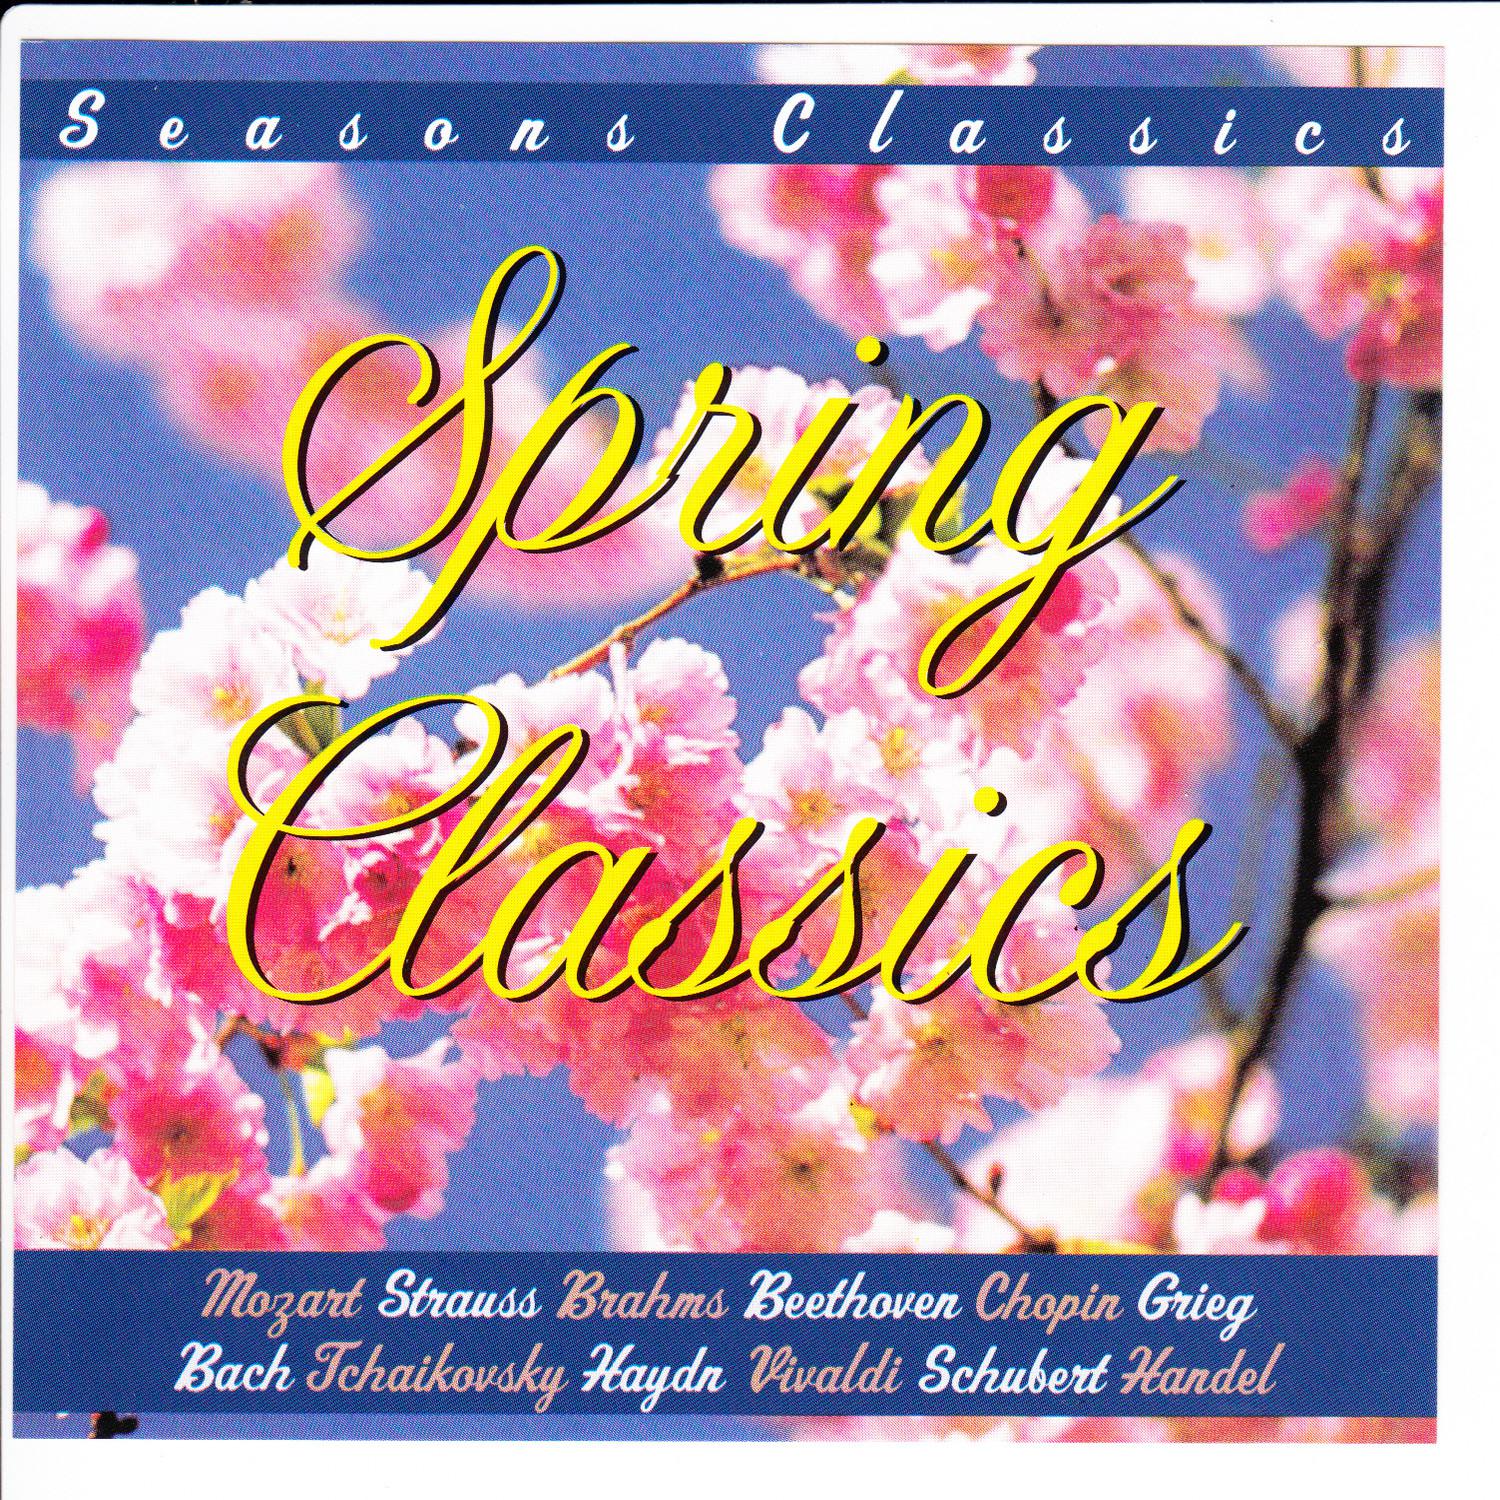 Strauss - Voices of Spring, Op. 410 - Waltz